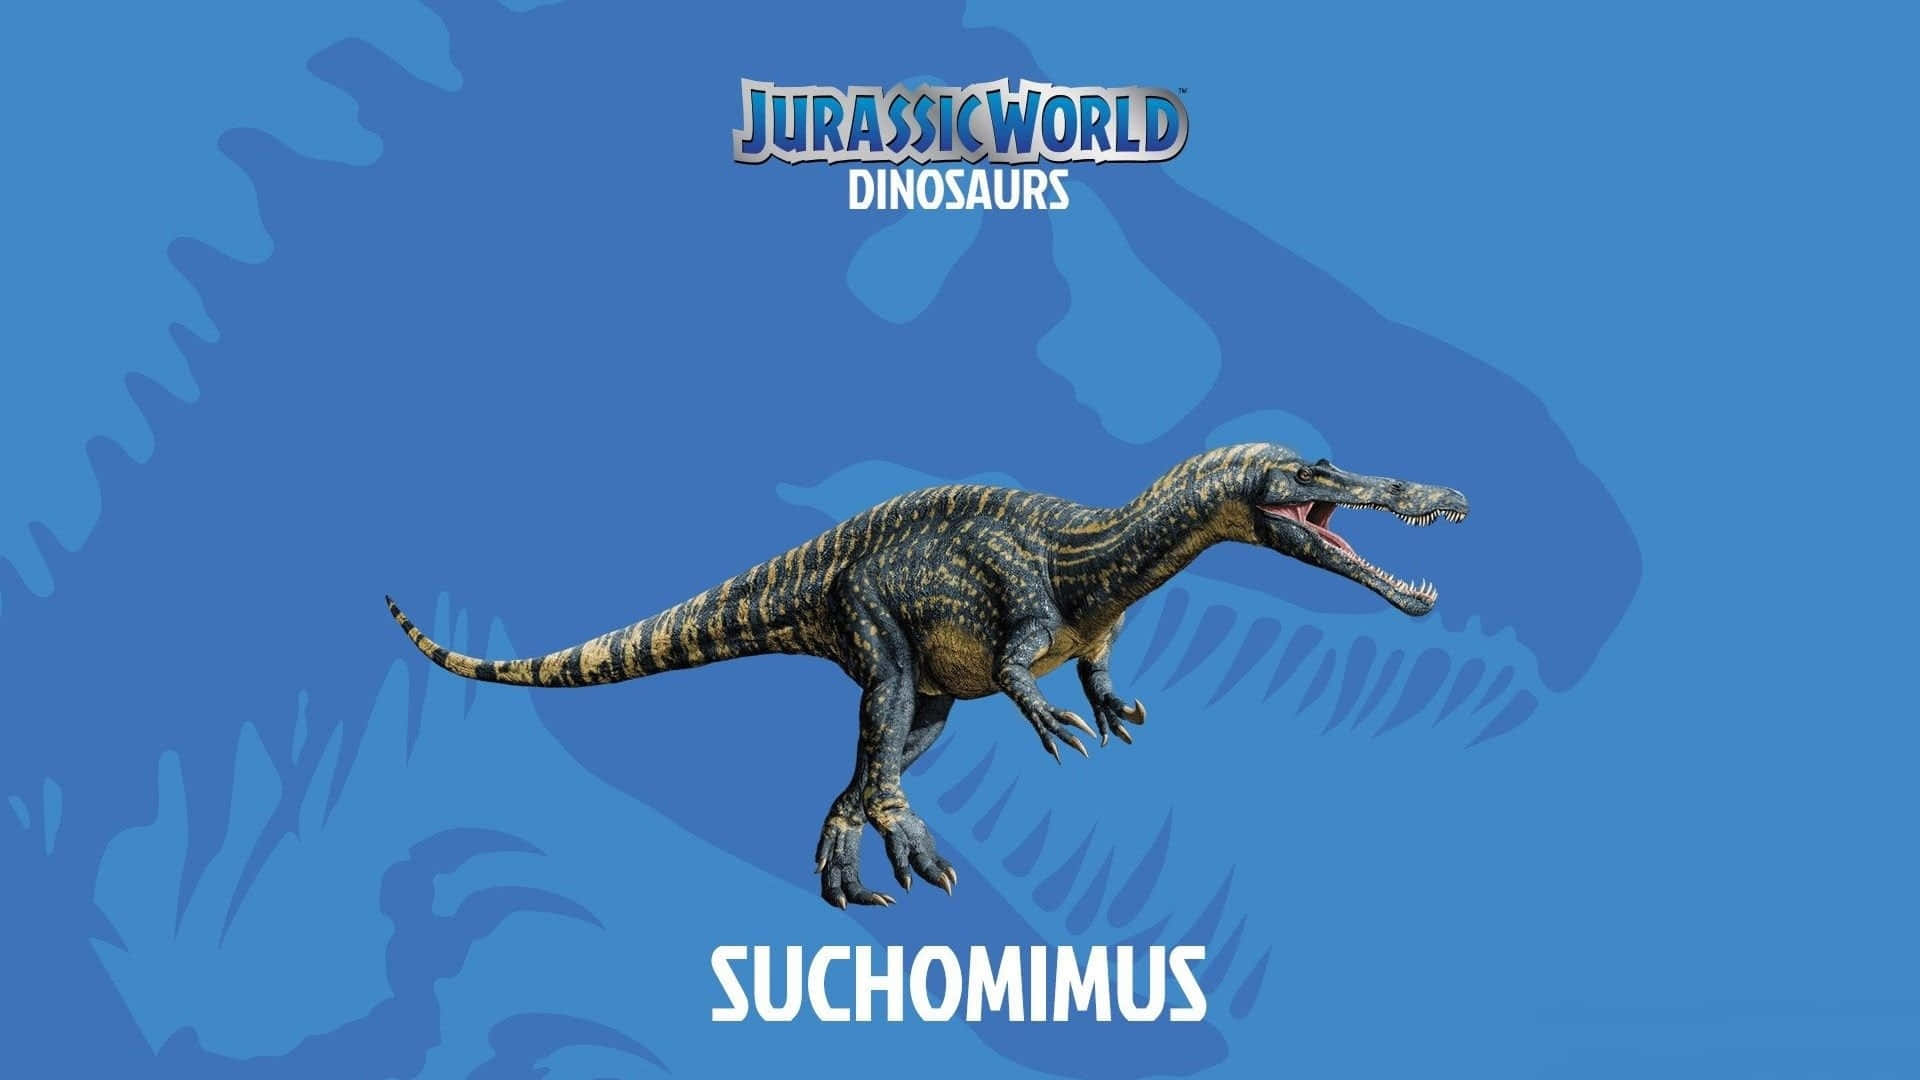 Blåjurassic World Suchomimus. Wallpaper